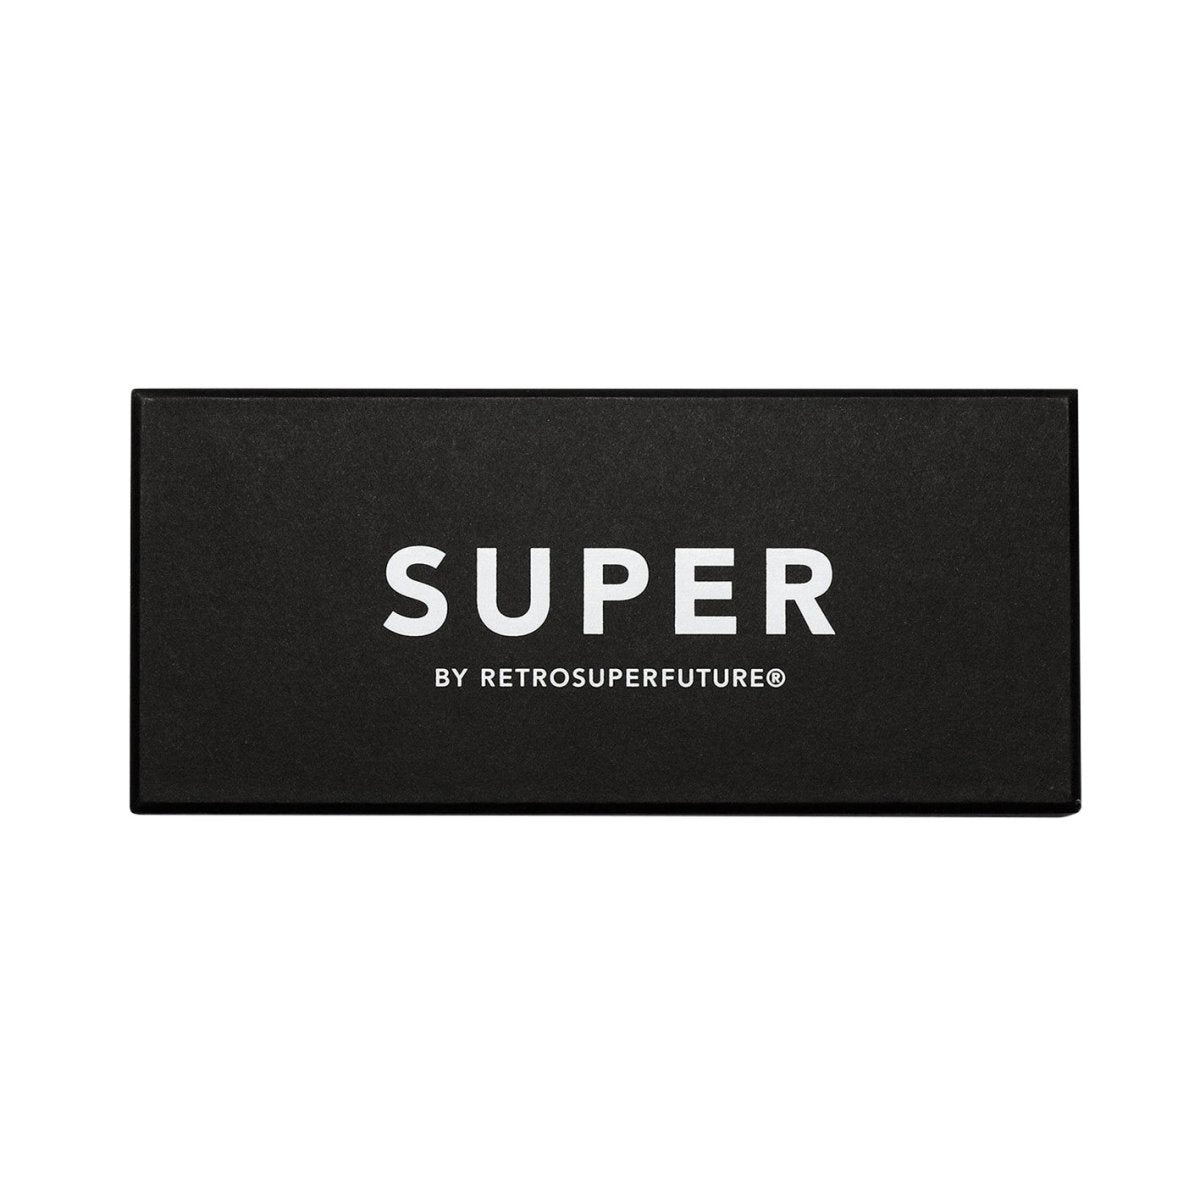 Super by Retrosuperfuture Unico 3627 (Grün)  - Allike Store